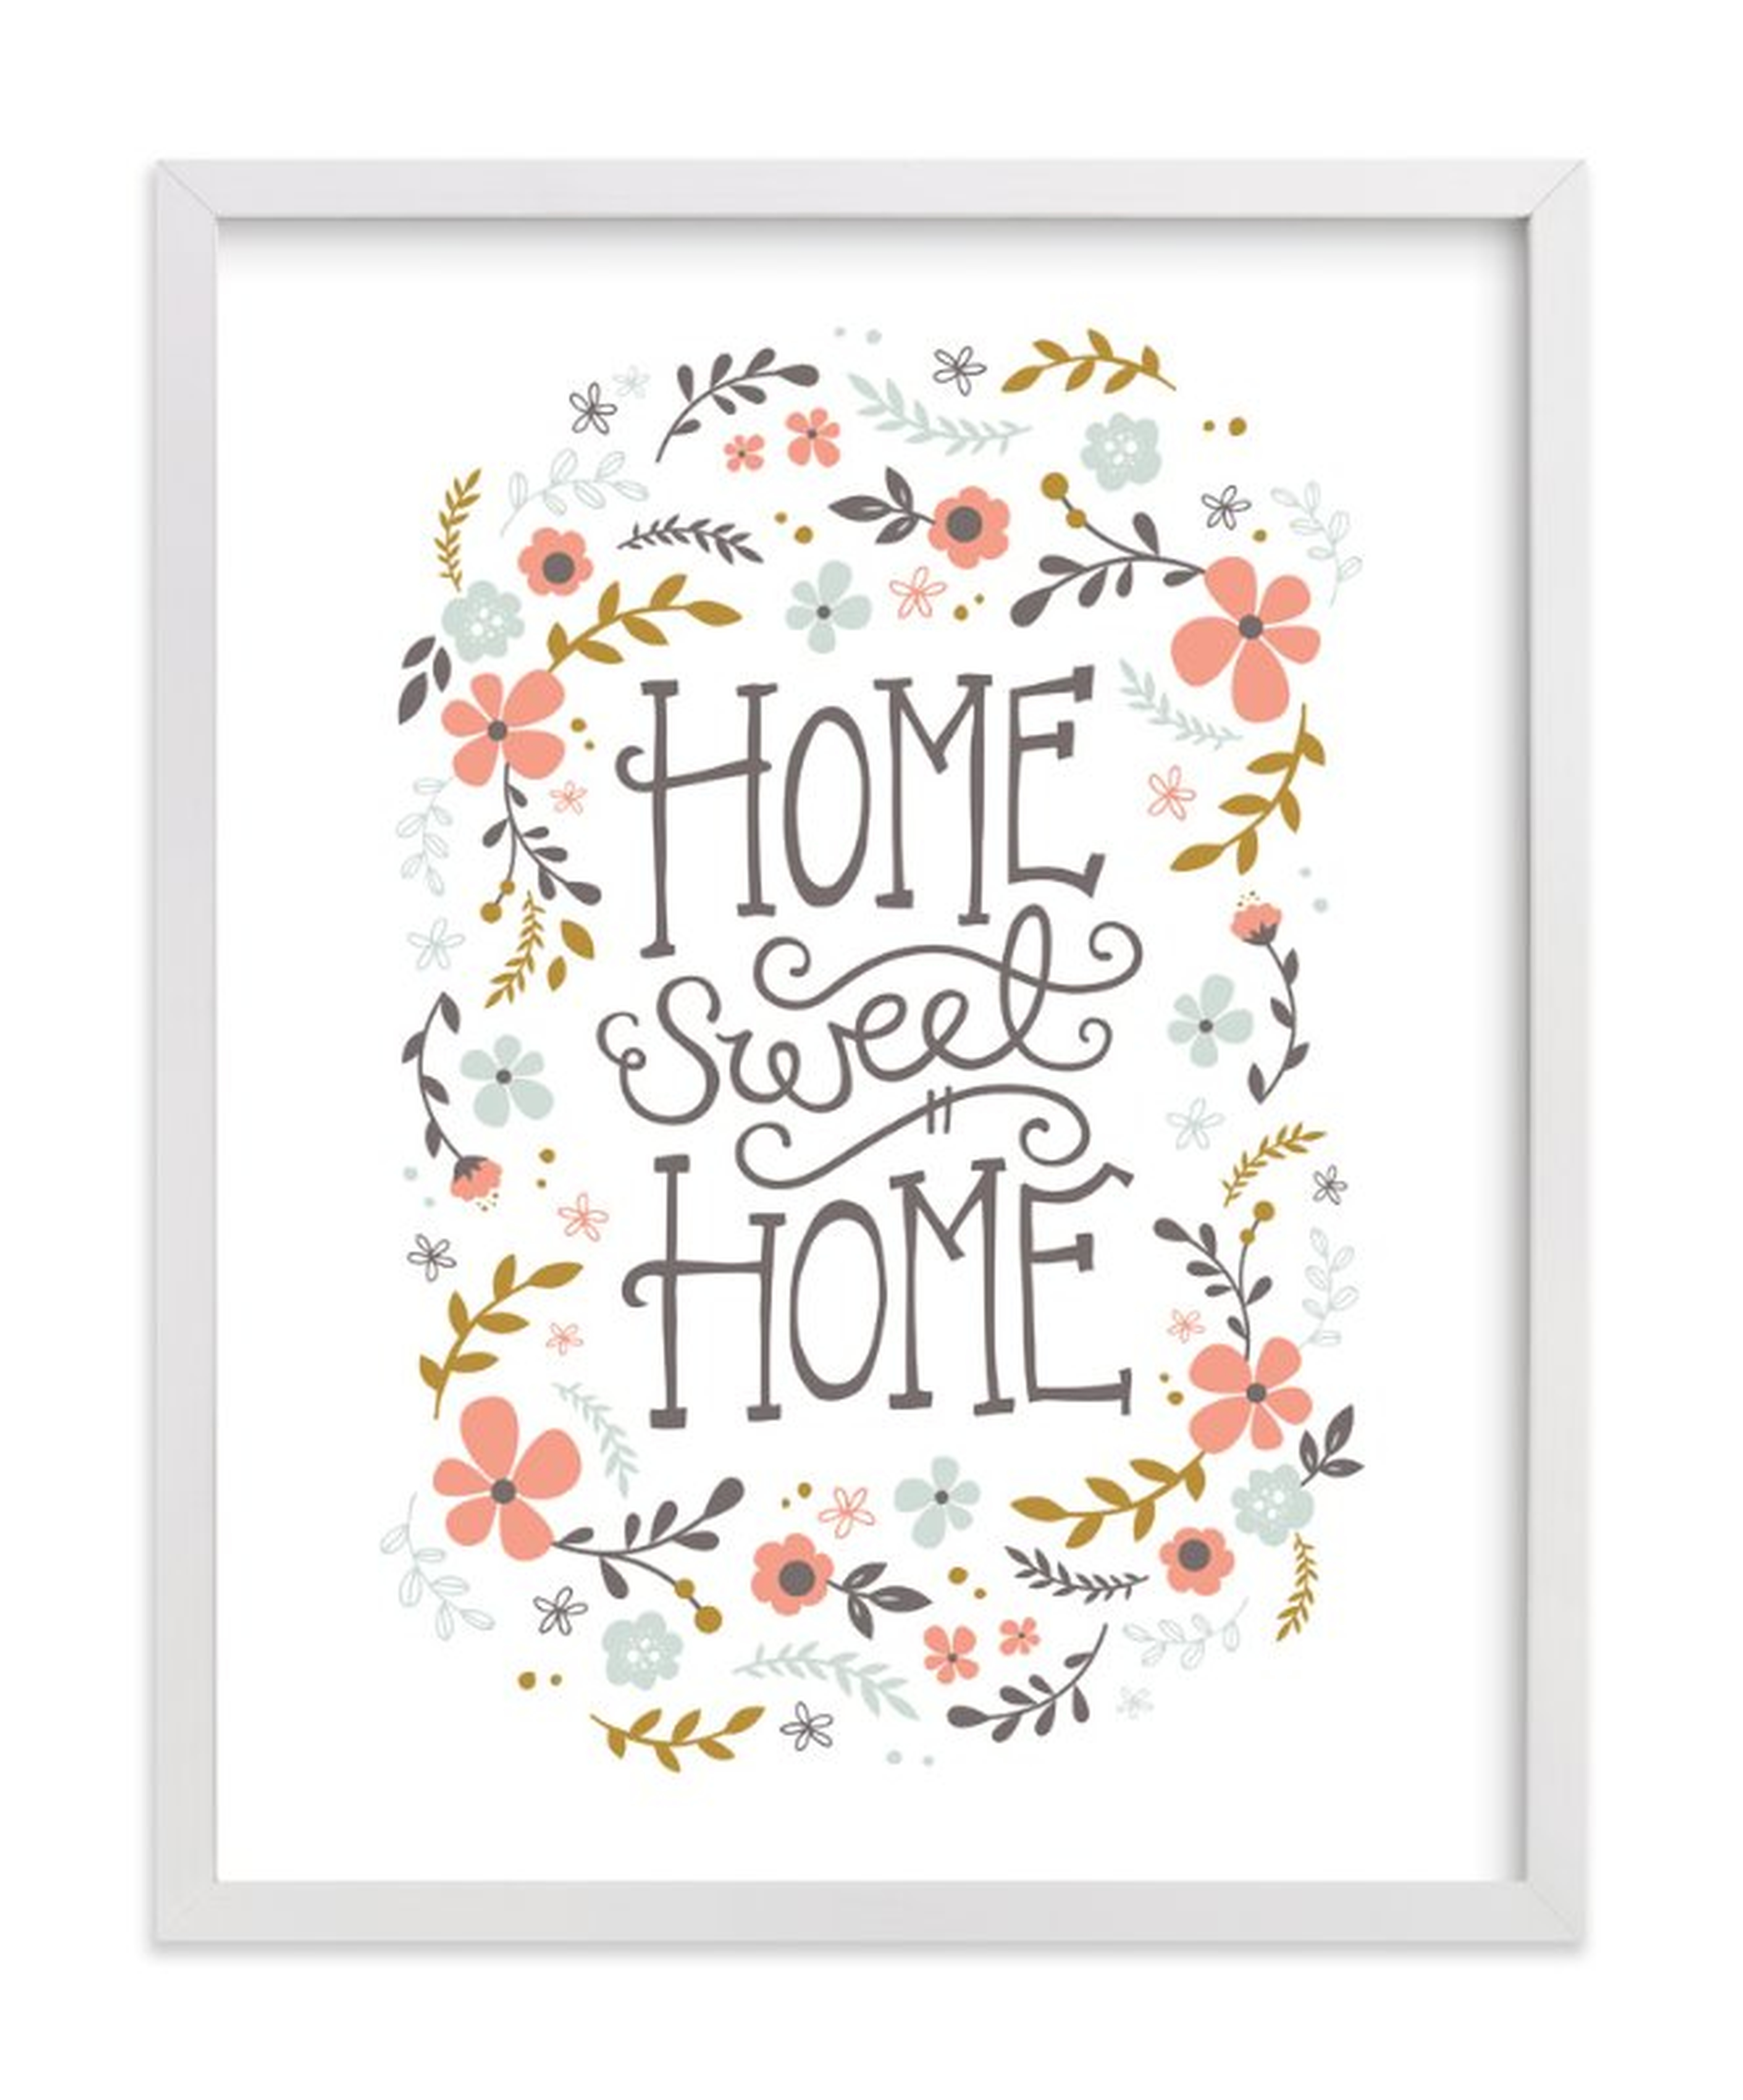 Home Sweet Home art print 11x14 - Minted